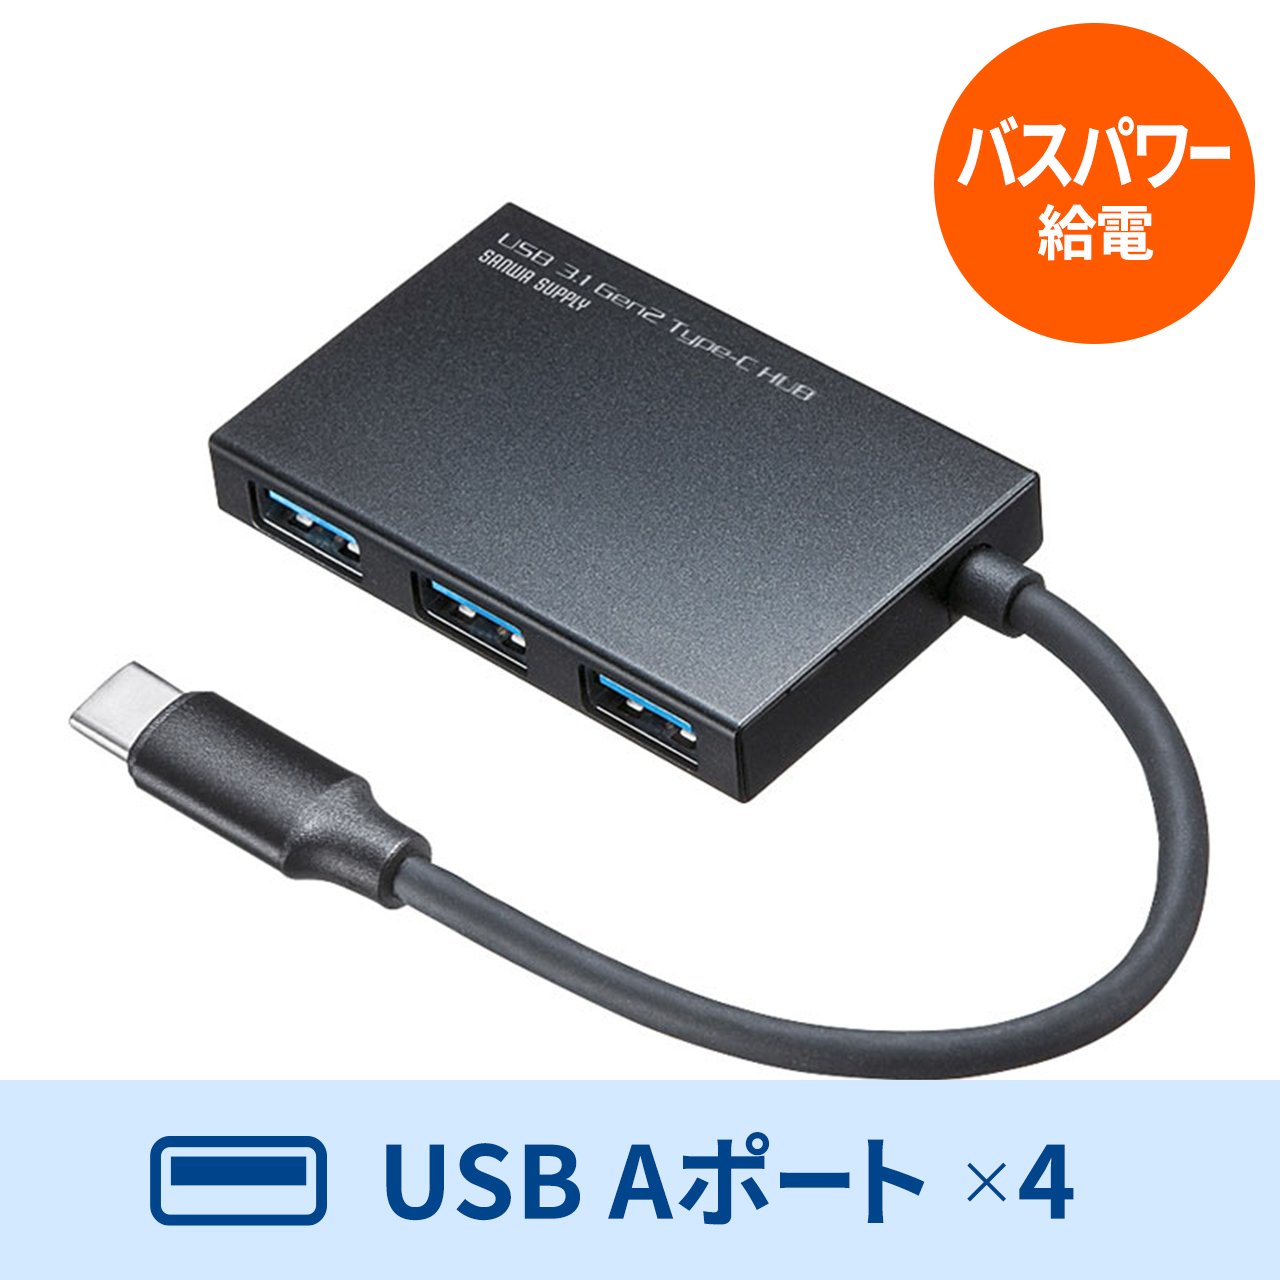 USB-3TCH18BK　Type-Cハブ(4ポート・USB3.1　Gen2対応・薄型・超高速・ブラック)｜サンプル無料貸出対応　|サンワダイレクト